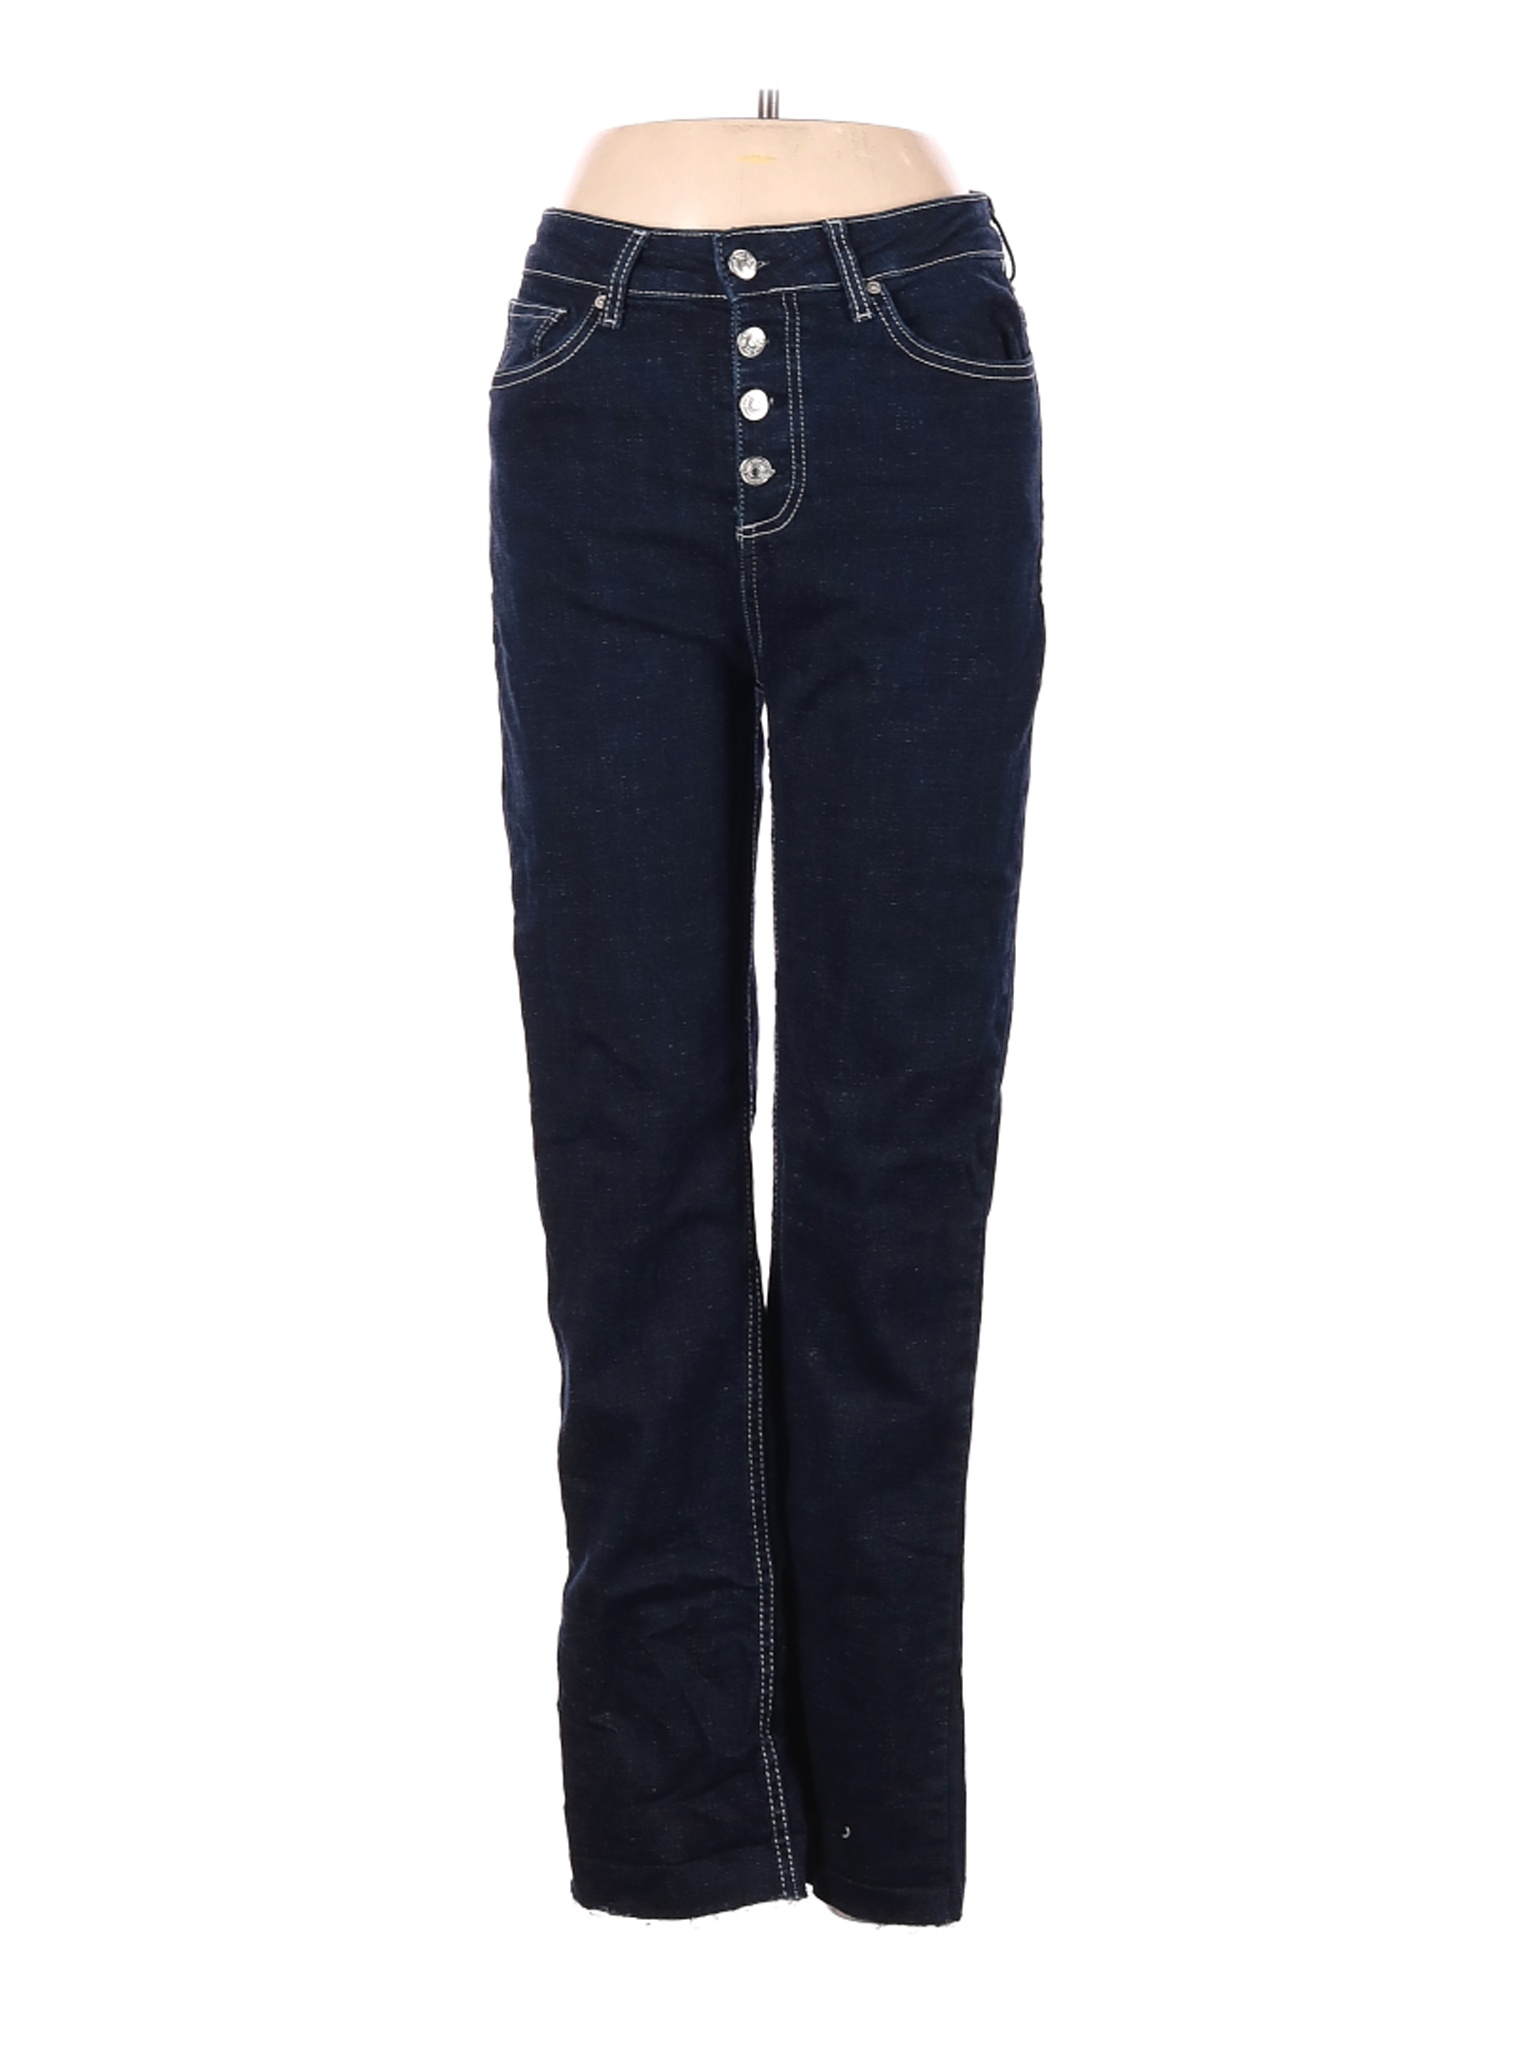 MNG Women Blue Jeans 8 | eBay